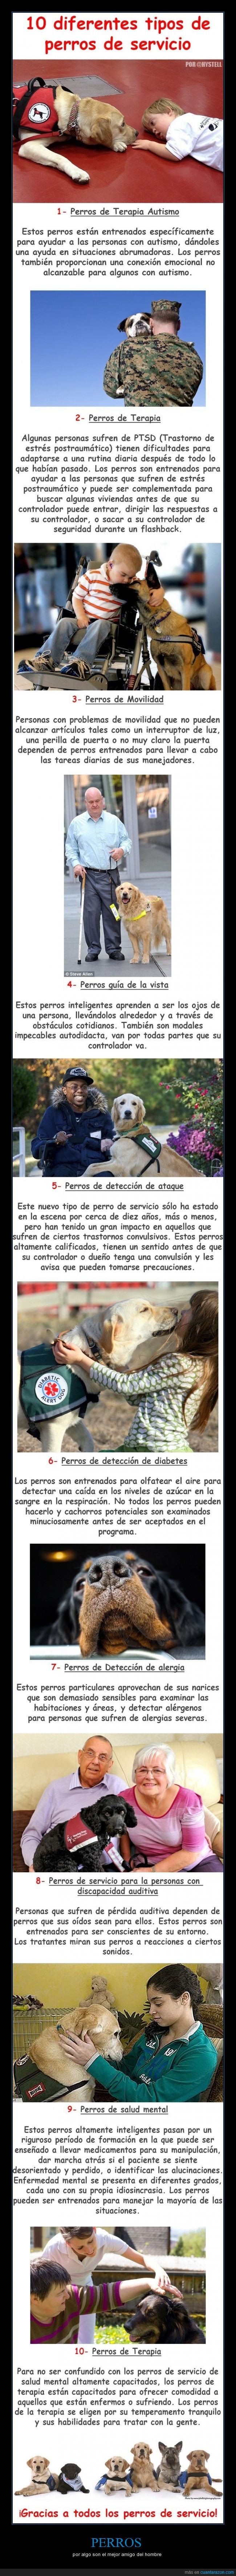 ayudar,perro,terapia,hombre,mejor amigo,curar,salvar